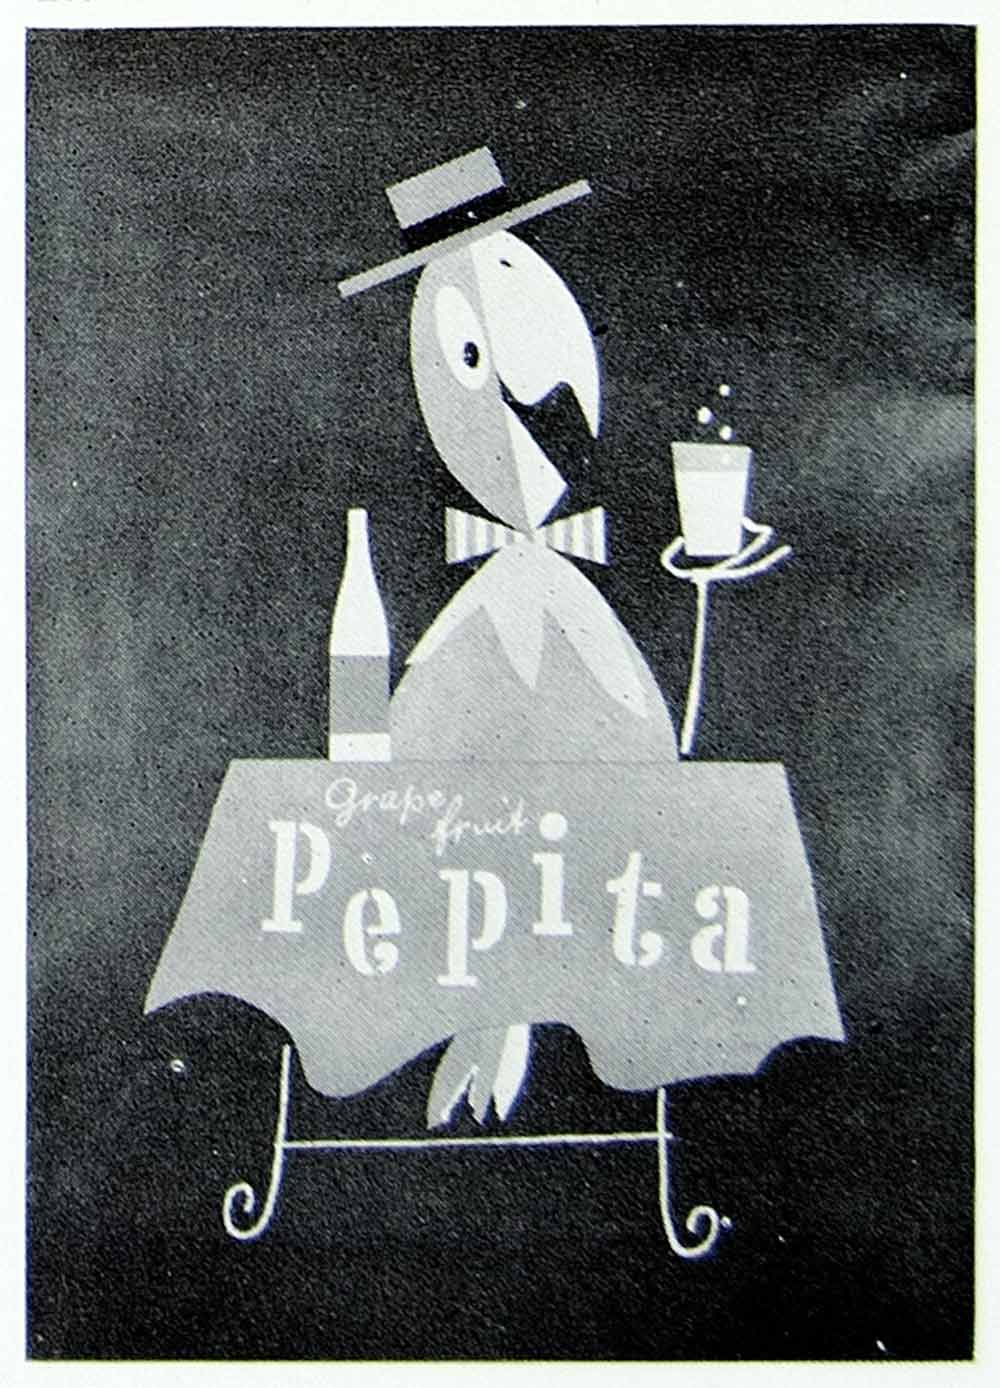 1957 Print Herbert Leupin Advertising Poster Pepita Grapefruit Juice Soda VENA1